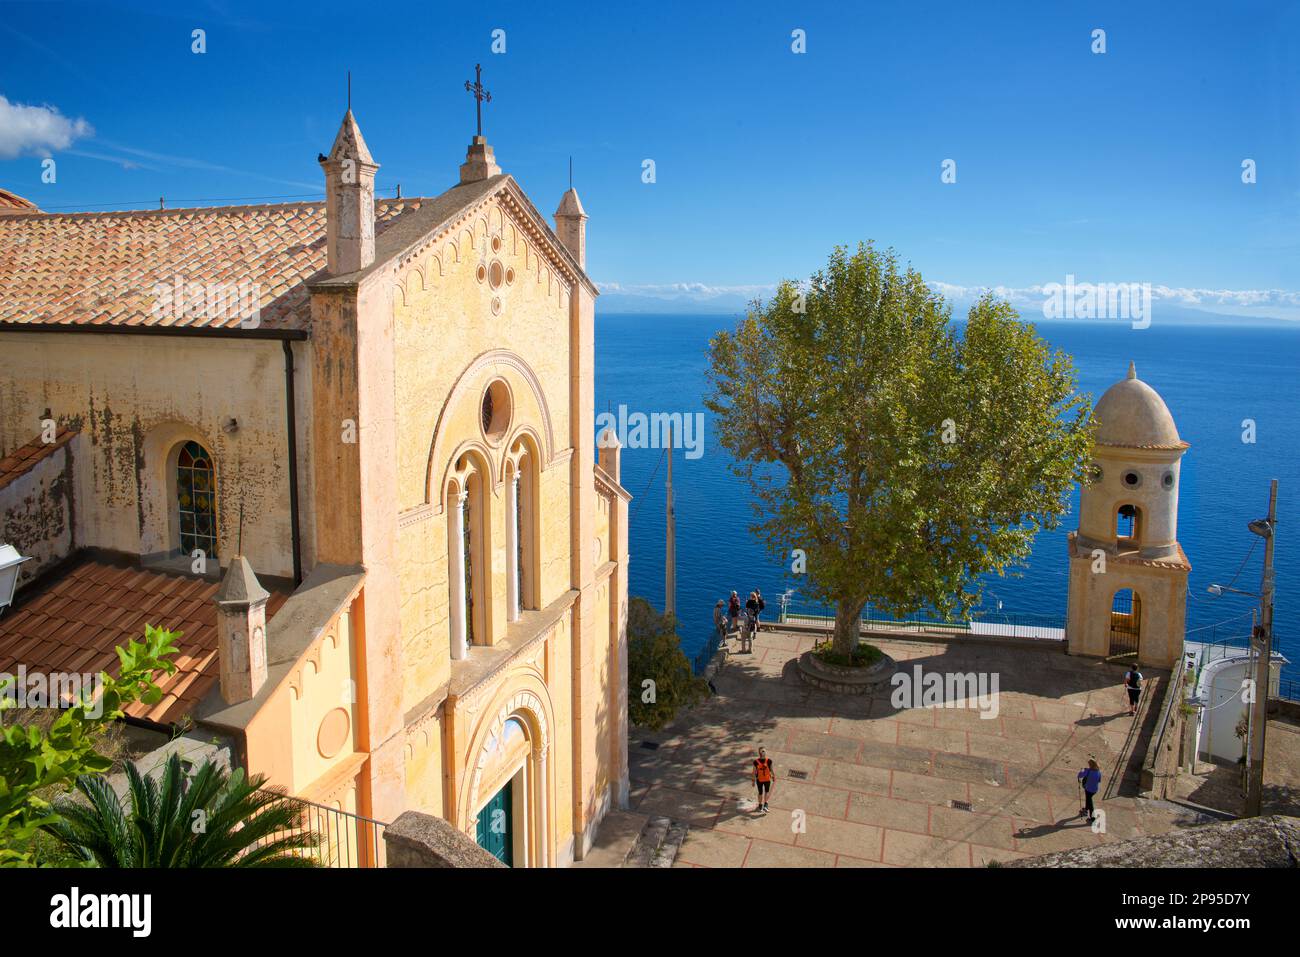 Chiesa di Santa Maria Bambina. Church of Santa Maria Bambina, Via Lone, 84011 Amalfi SA, Italy  Provice of Salerno,Campaniaregion. Amalfi coast, Italy Stock Photo